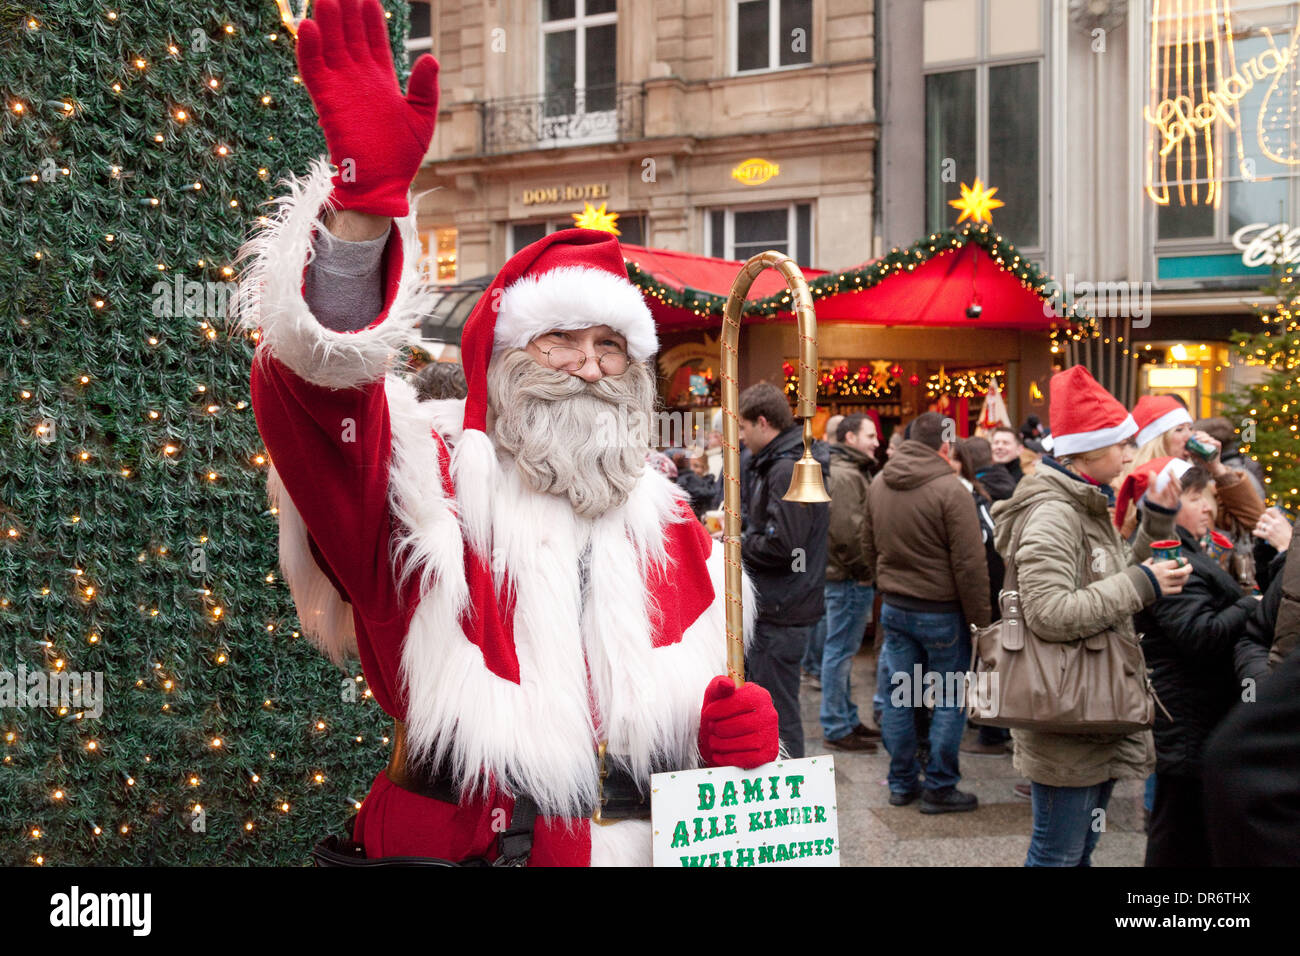 Santa Claus am Eingang der Kölner Weihnachtsmarkt, Dom Markt, Köln (Köln), Deutschland, Europa Stockfoto